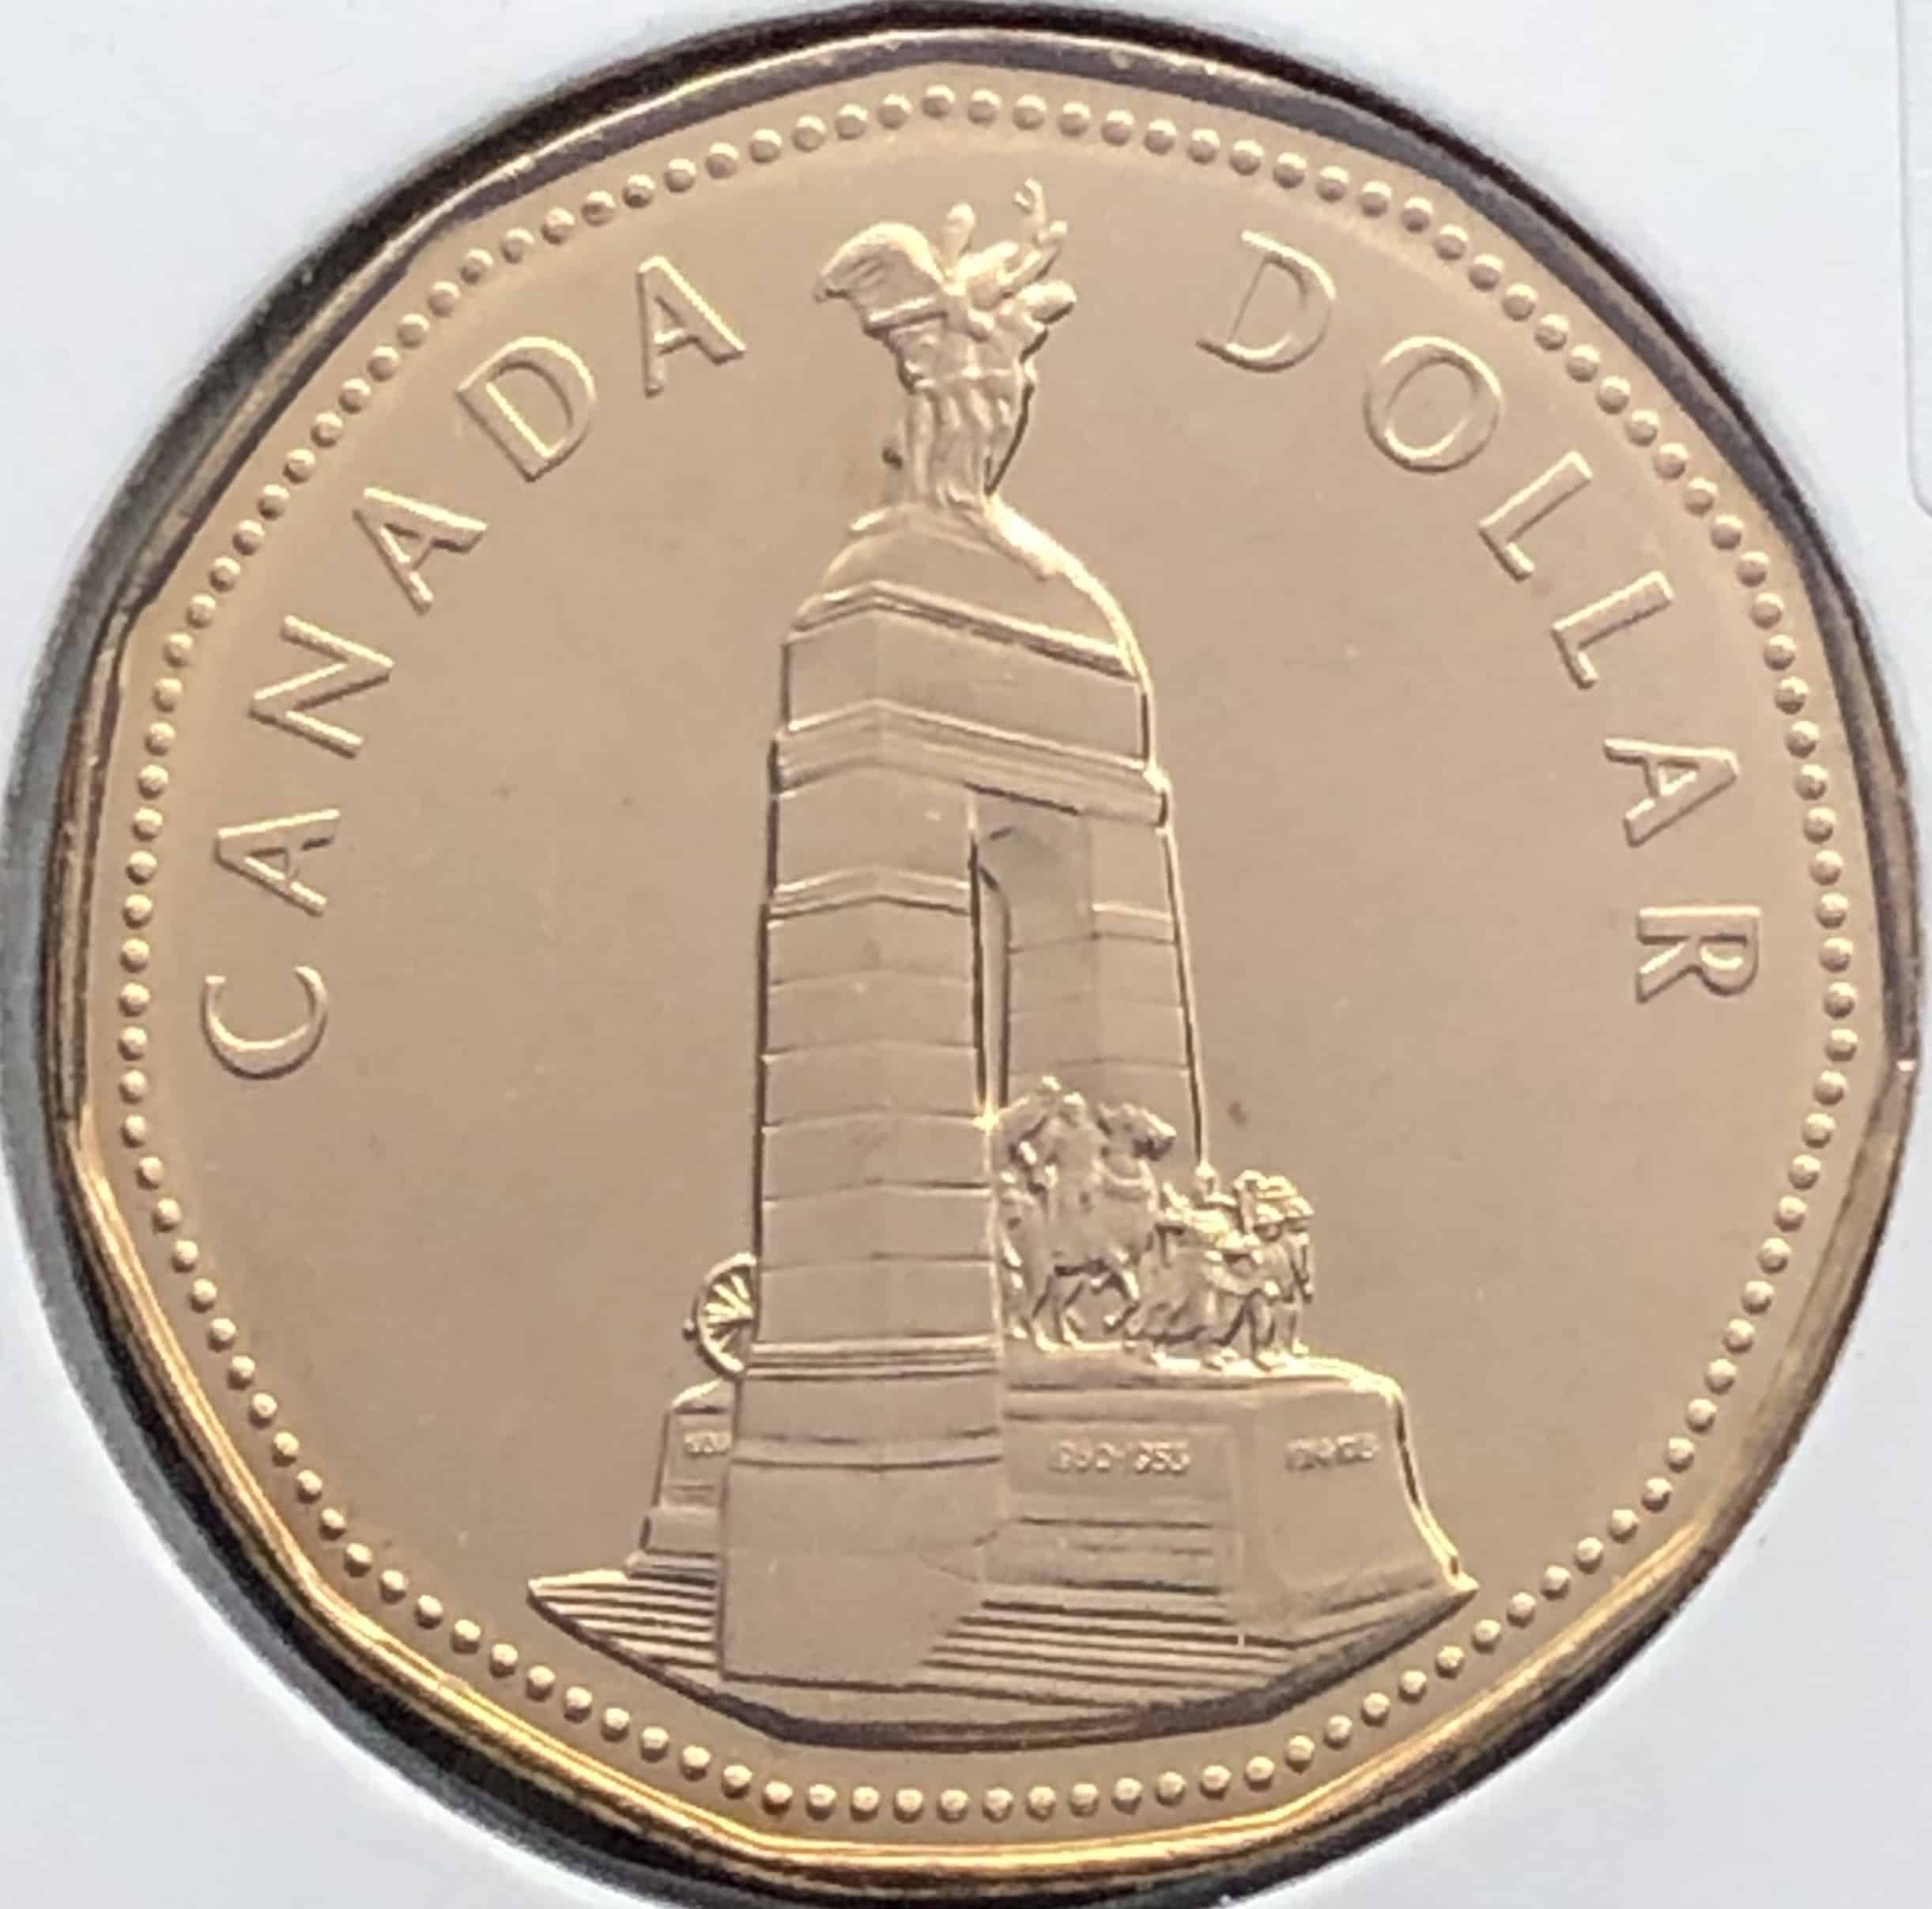 Revers Le Monument commémoratif de guerre du Canada, sur la place de la Confédération à Ottawa, est entouré de l'inscription "CANADA" et de la valeur faciale Écriture : Latin Inscription : CANADA DOLLAR 1939 1950-1953 1914-1918